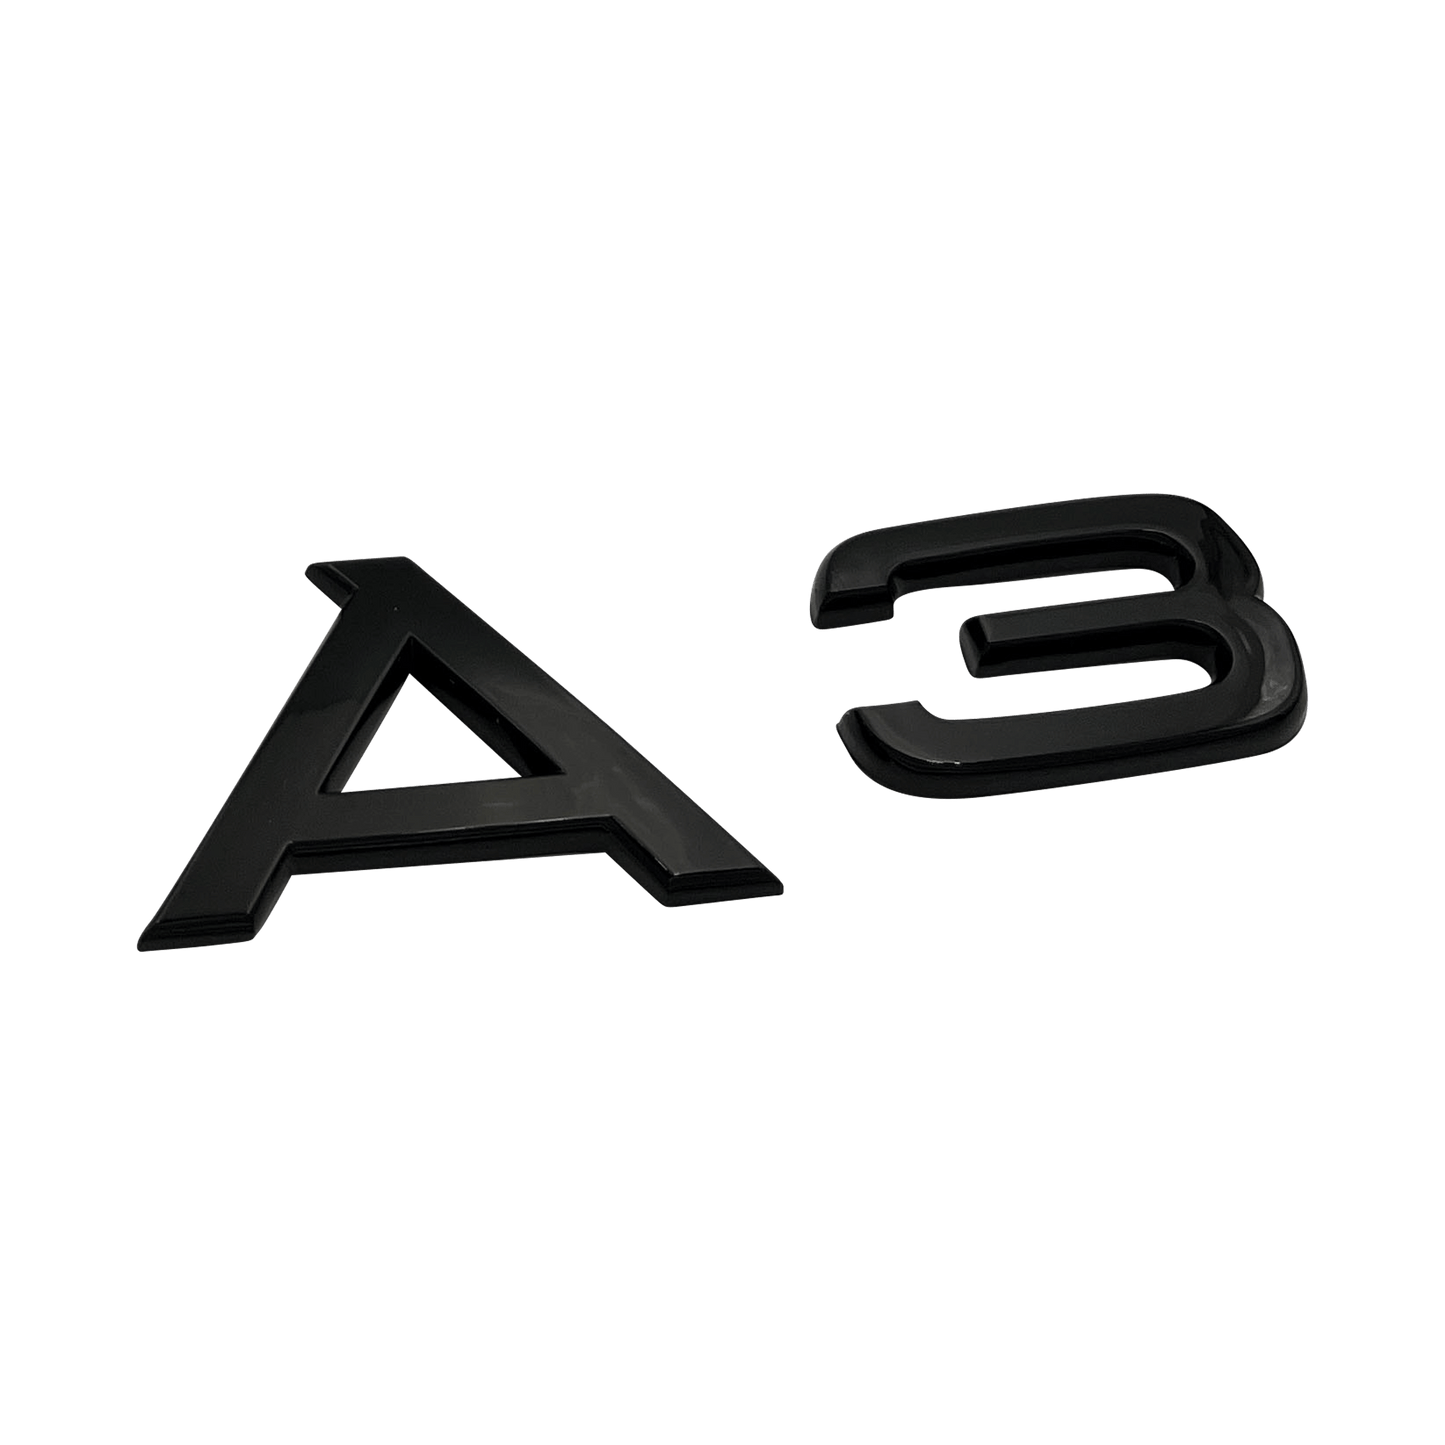 Sort Audi A3 Emblem Badge